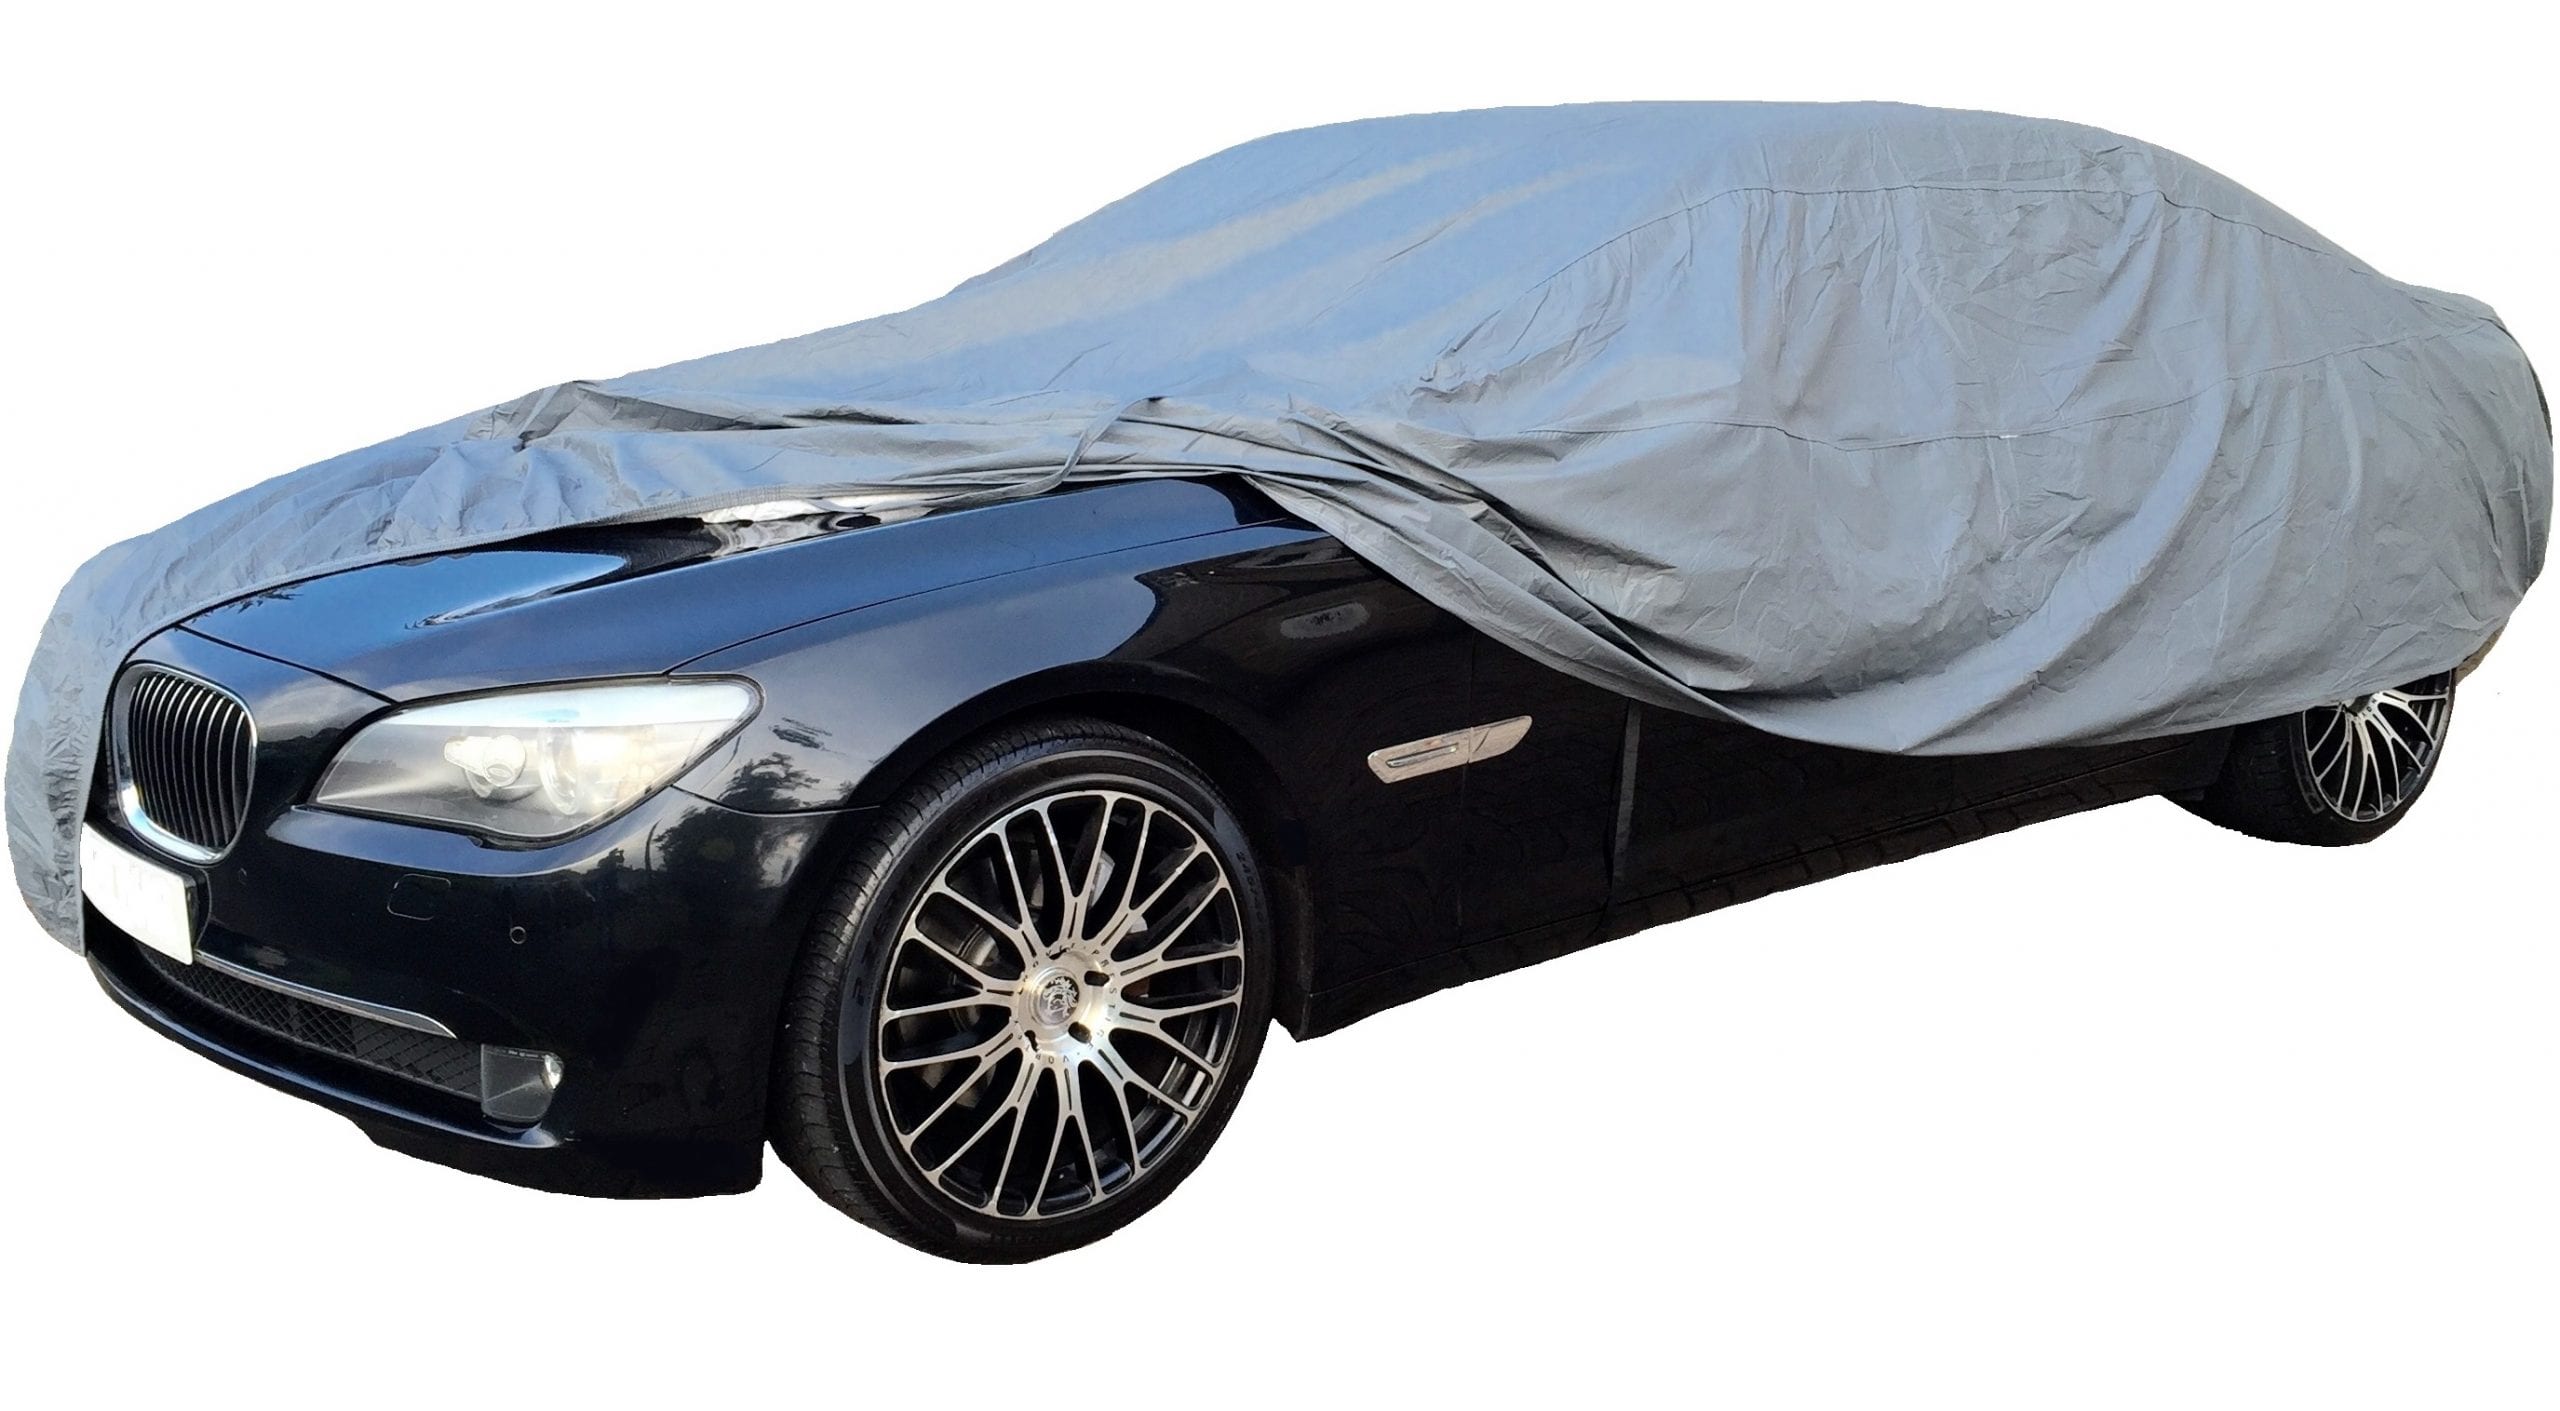 Full Car Cover Outdoor Anti-UV Sun Shade Rain Snow Fog Dust